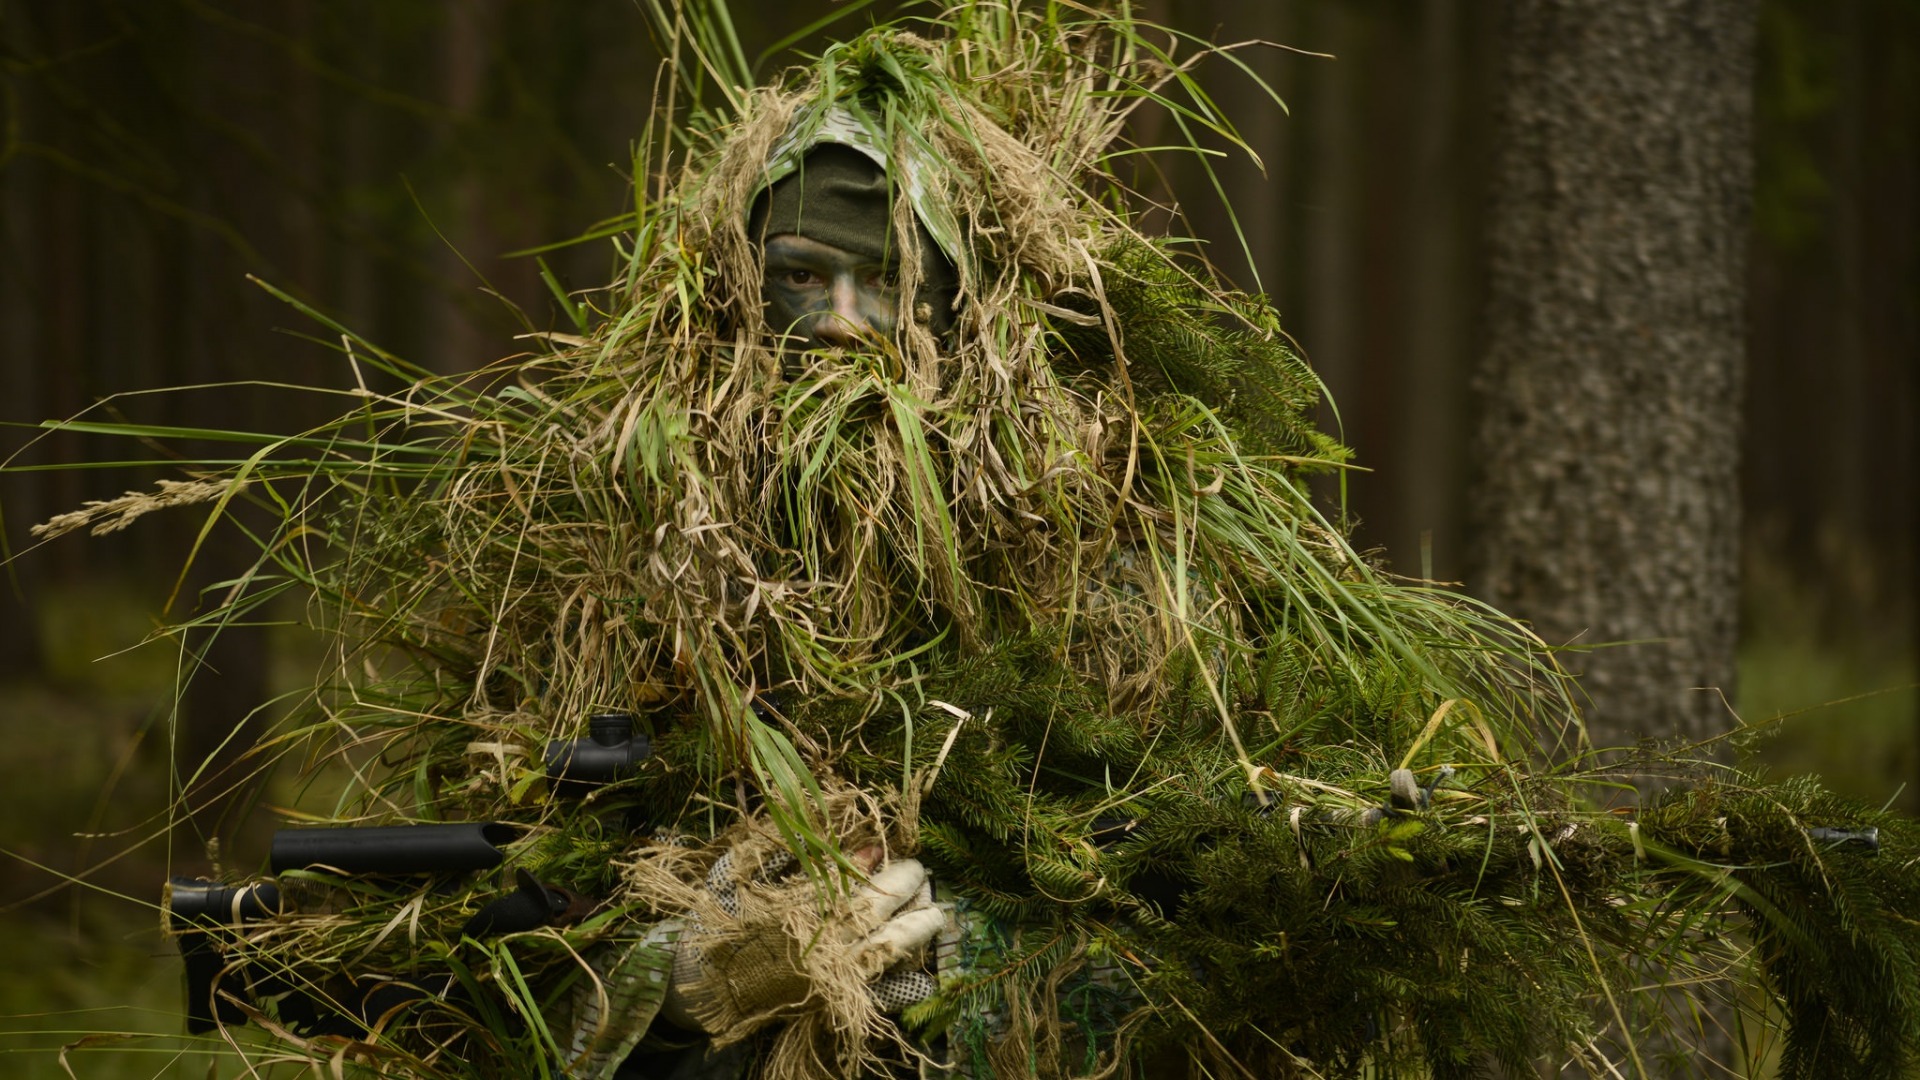 تصویر بسیار جالب از استتار سرباز با گیاهان در جنگل 